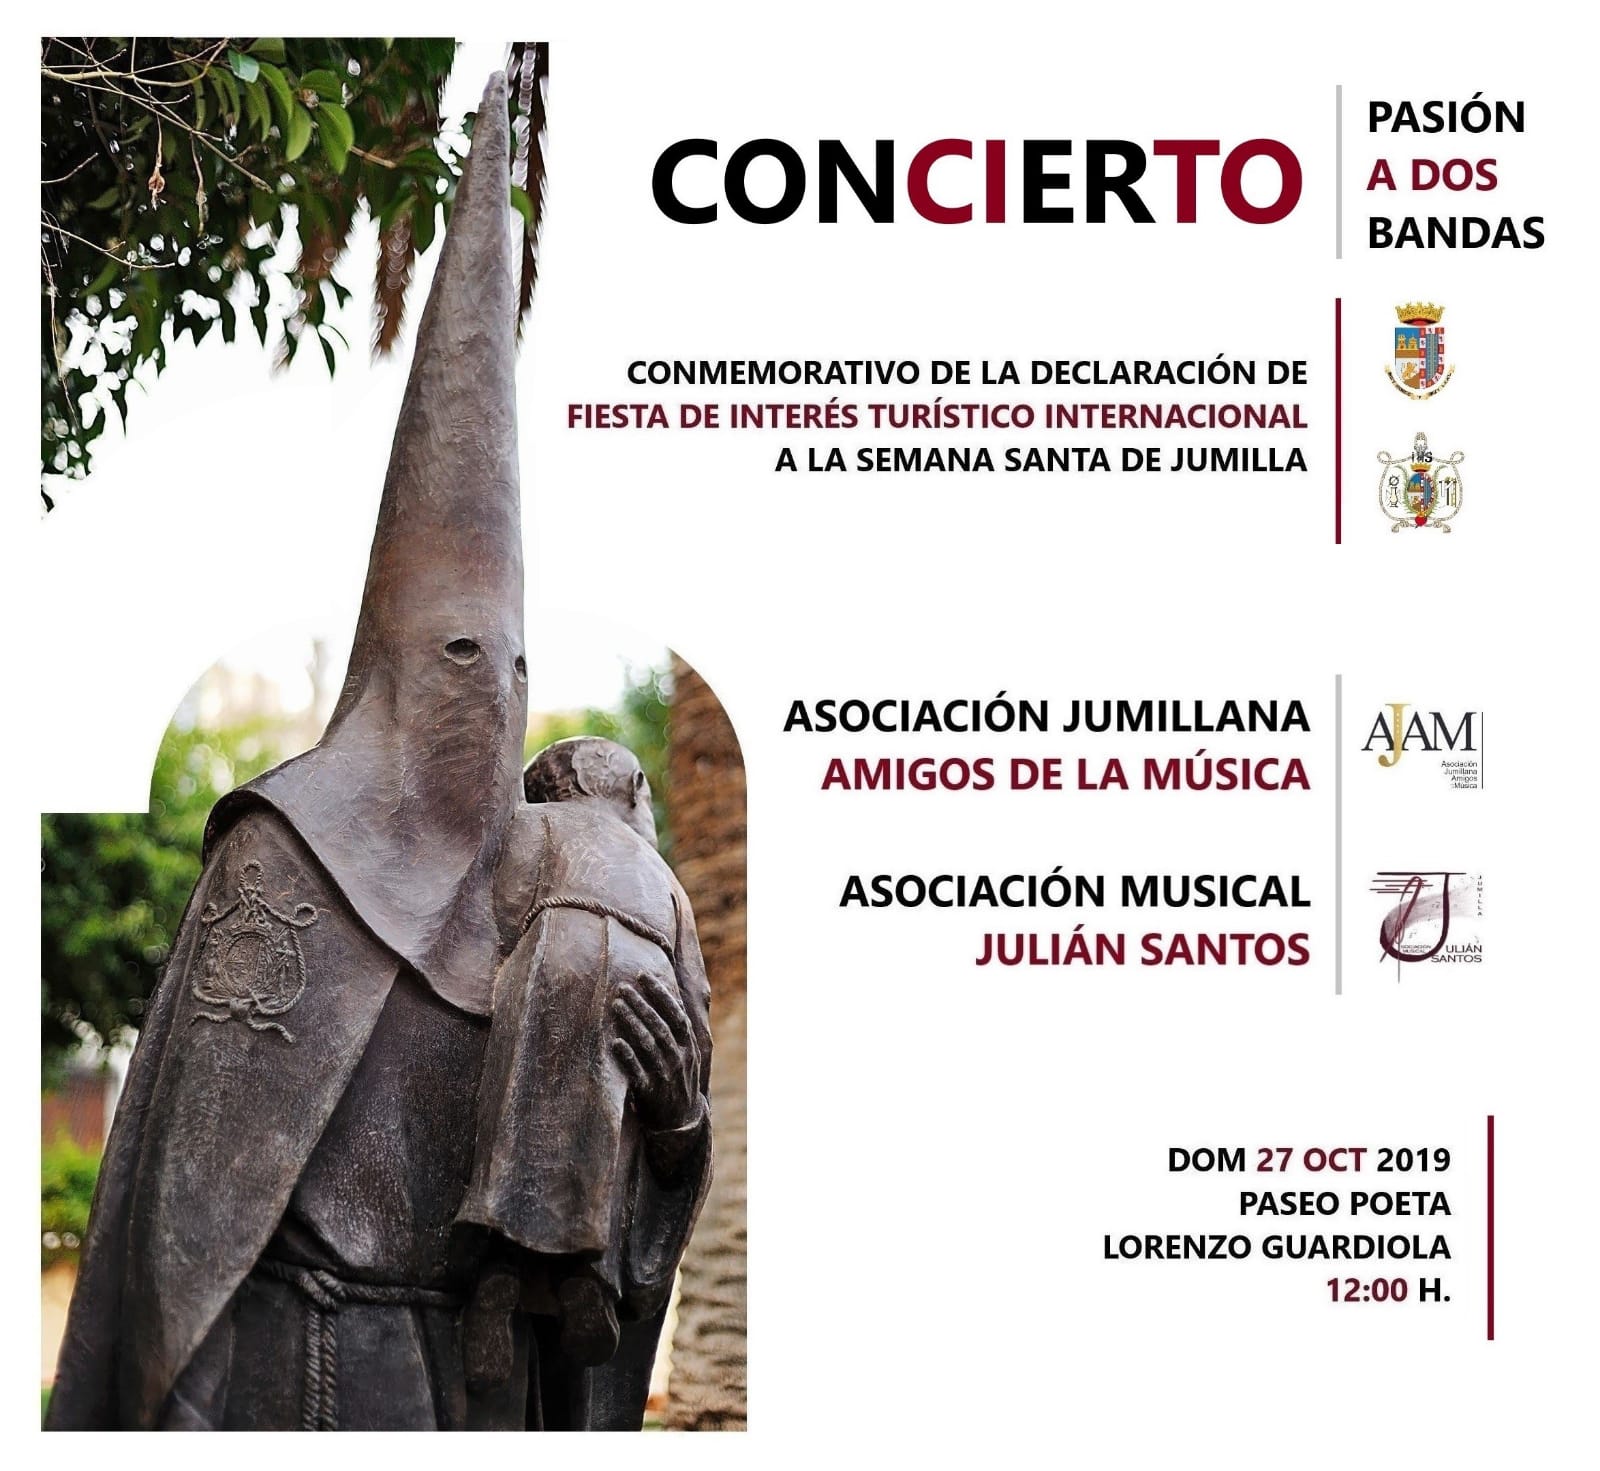 La Julián Santos y la AJAM celebran el Interés Turístico Internacional en el concierto ‘Pasión a dos bandas’